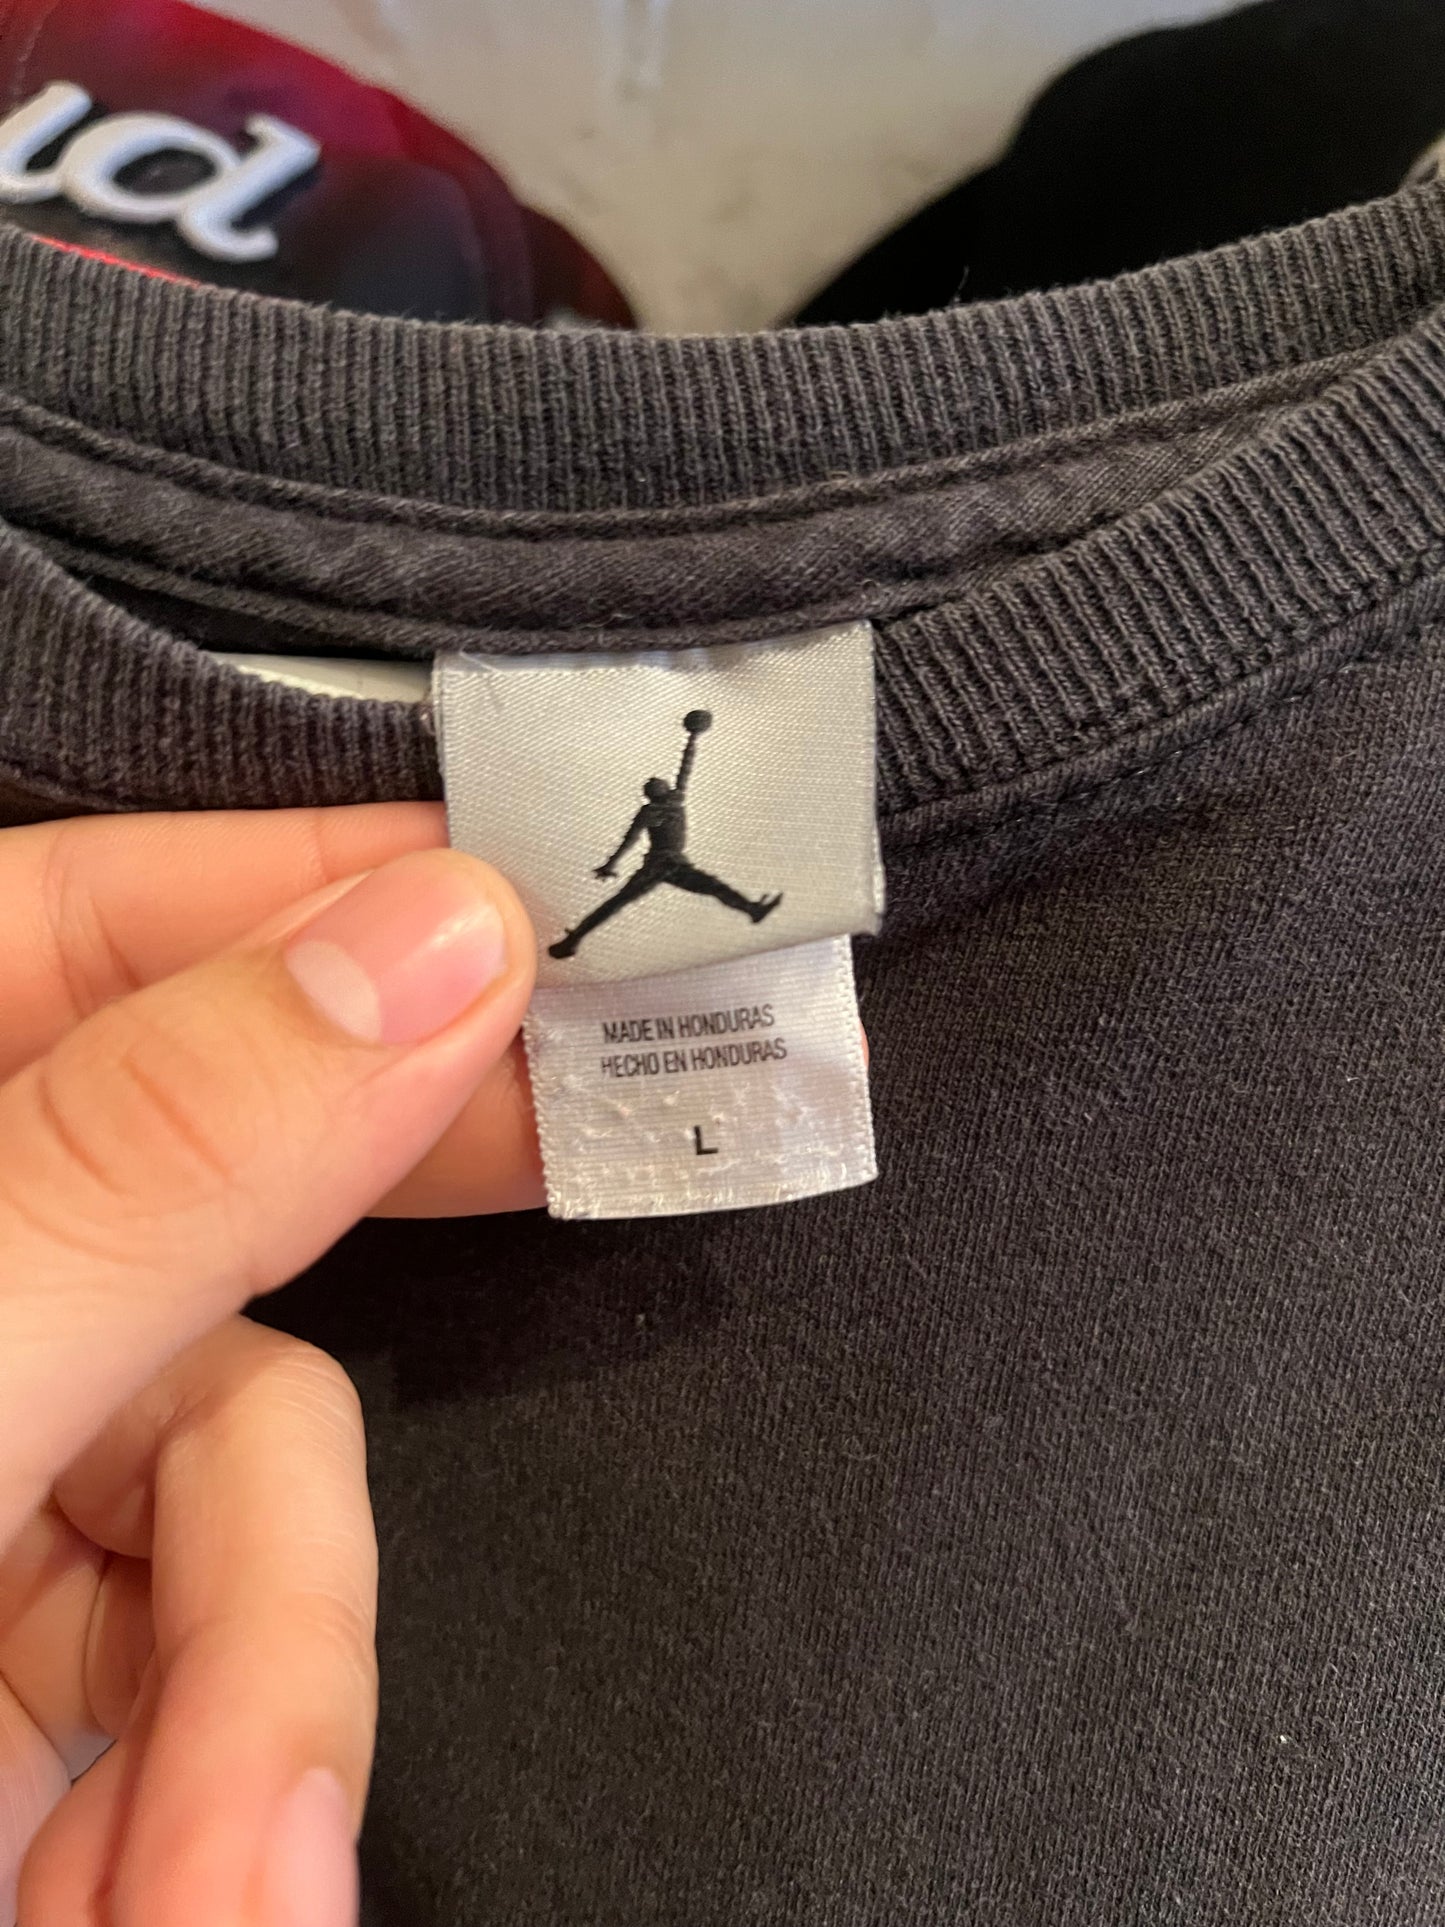 Jordan T-shirt size L